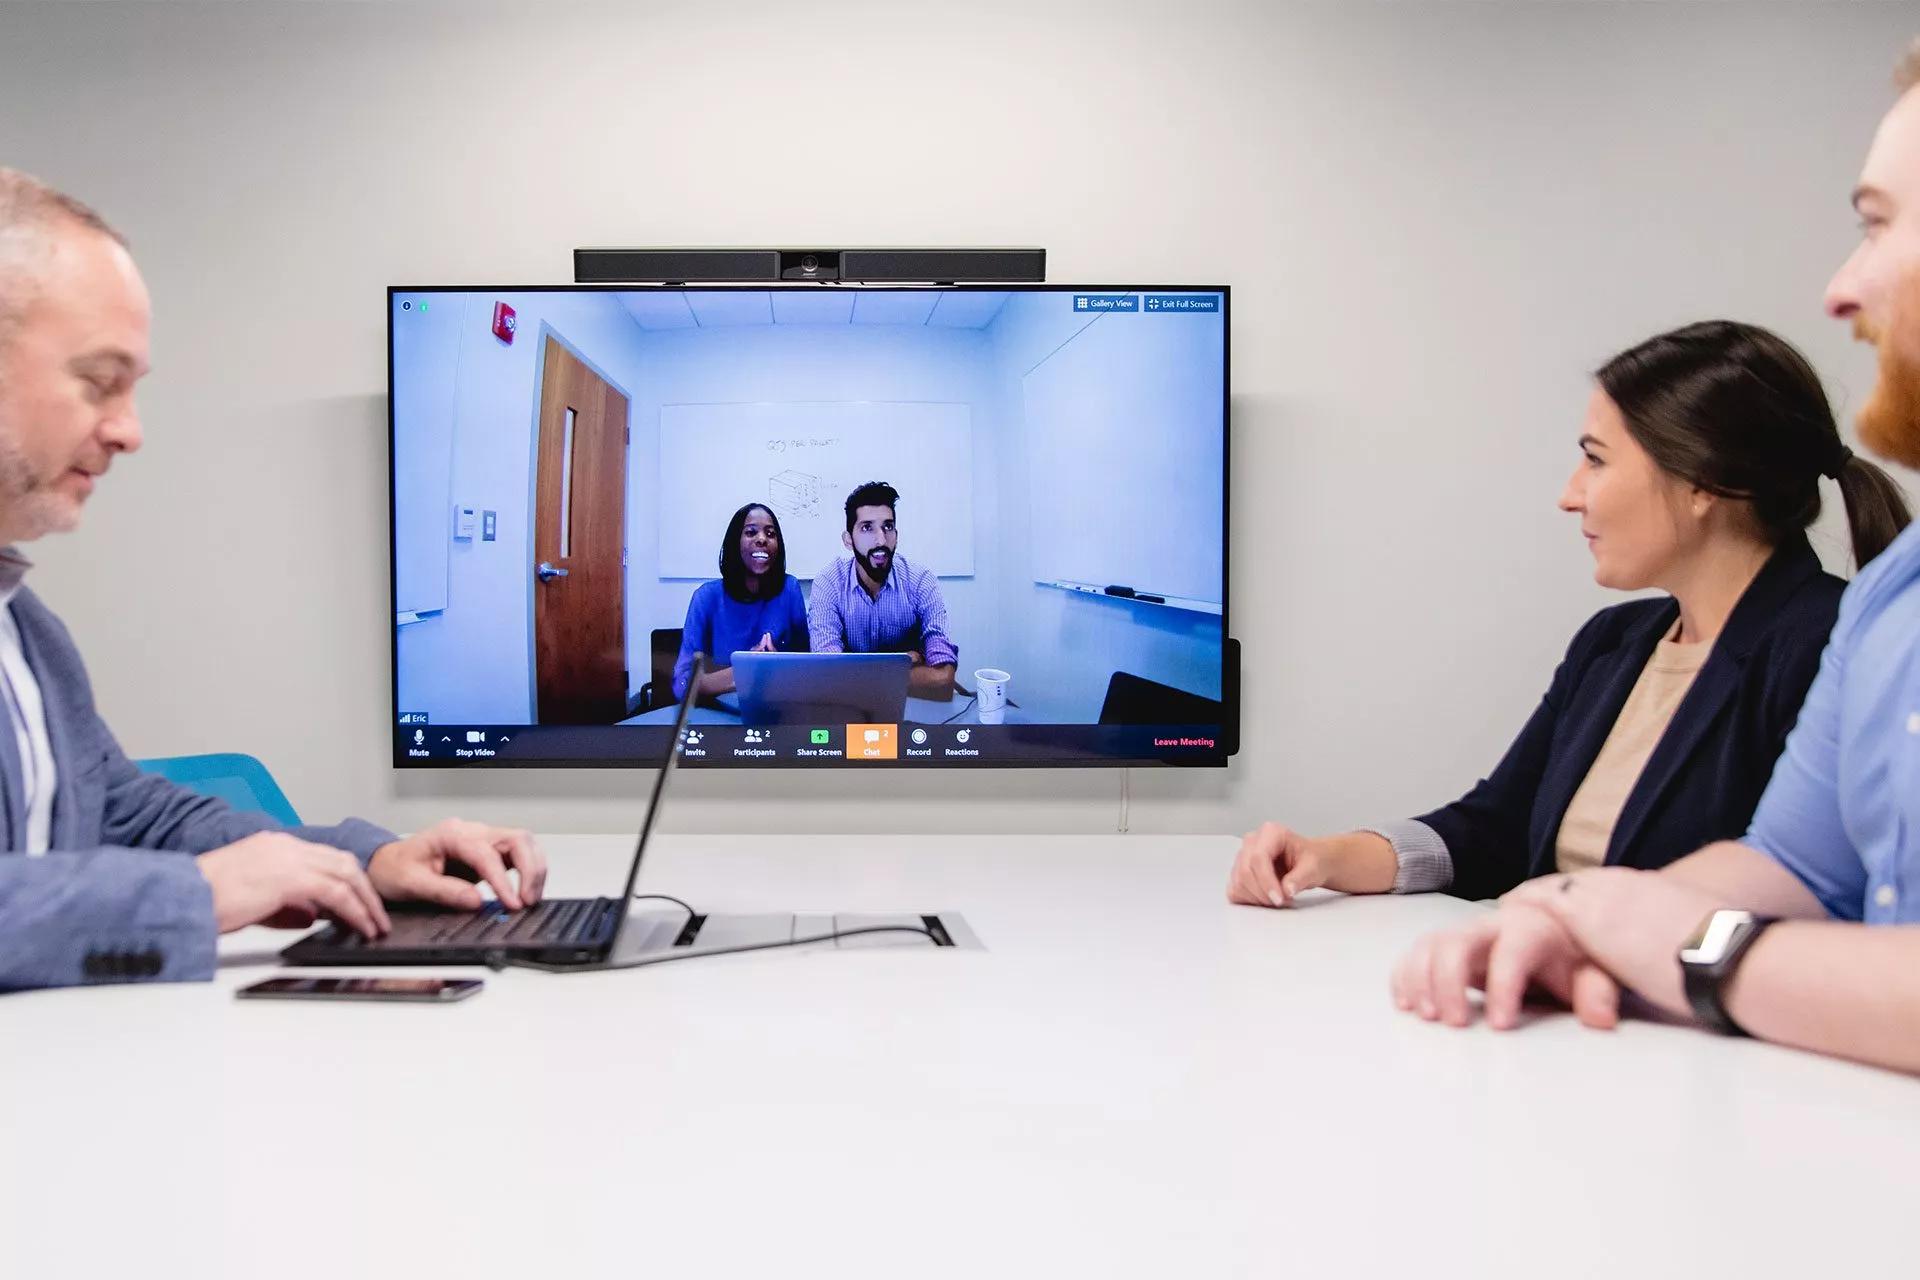 Un groupe d'employés participe à une réunion par vidéoconférence et regarde un écran.